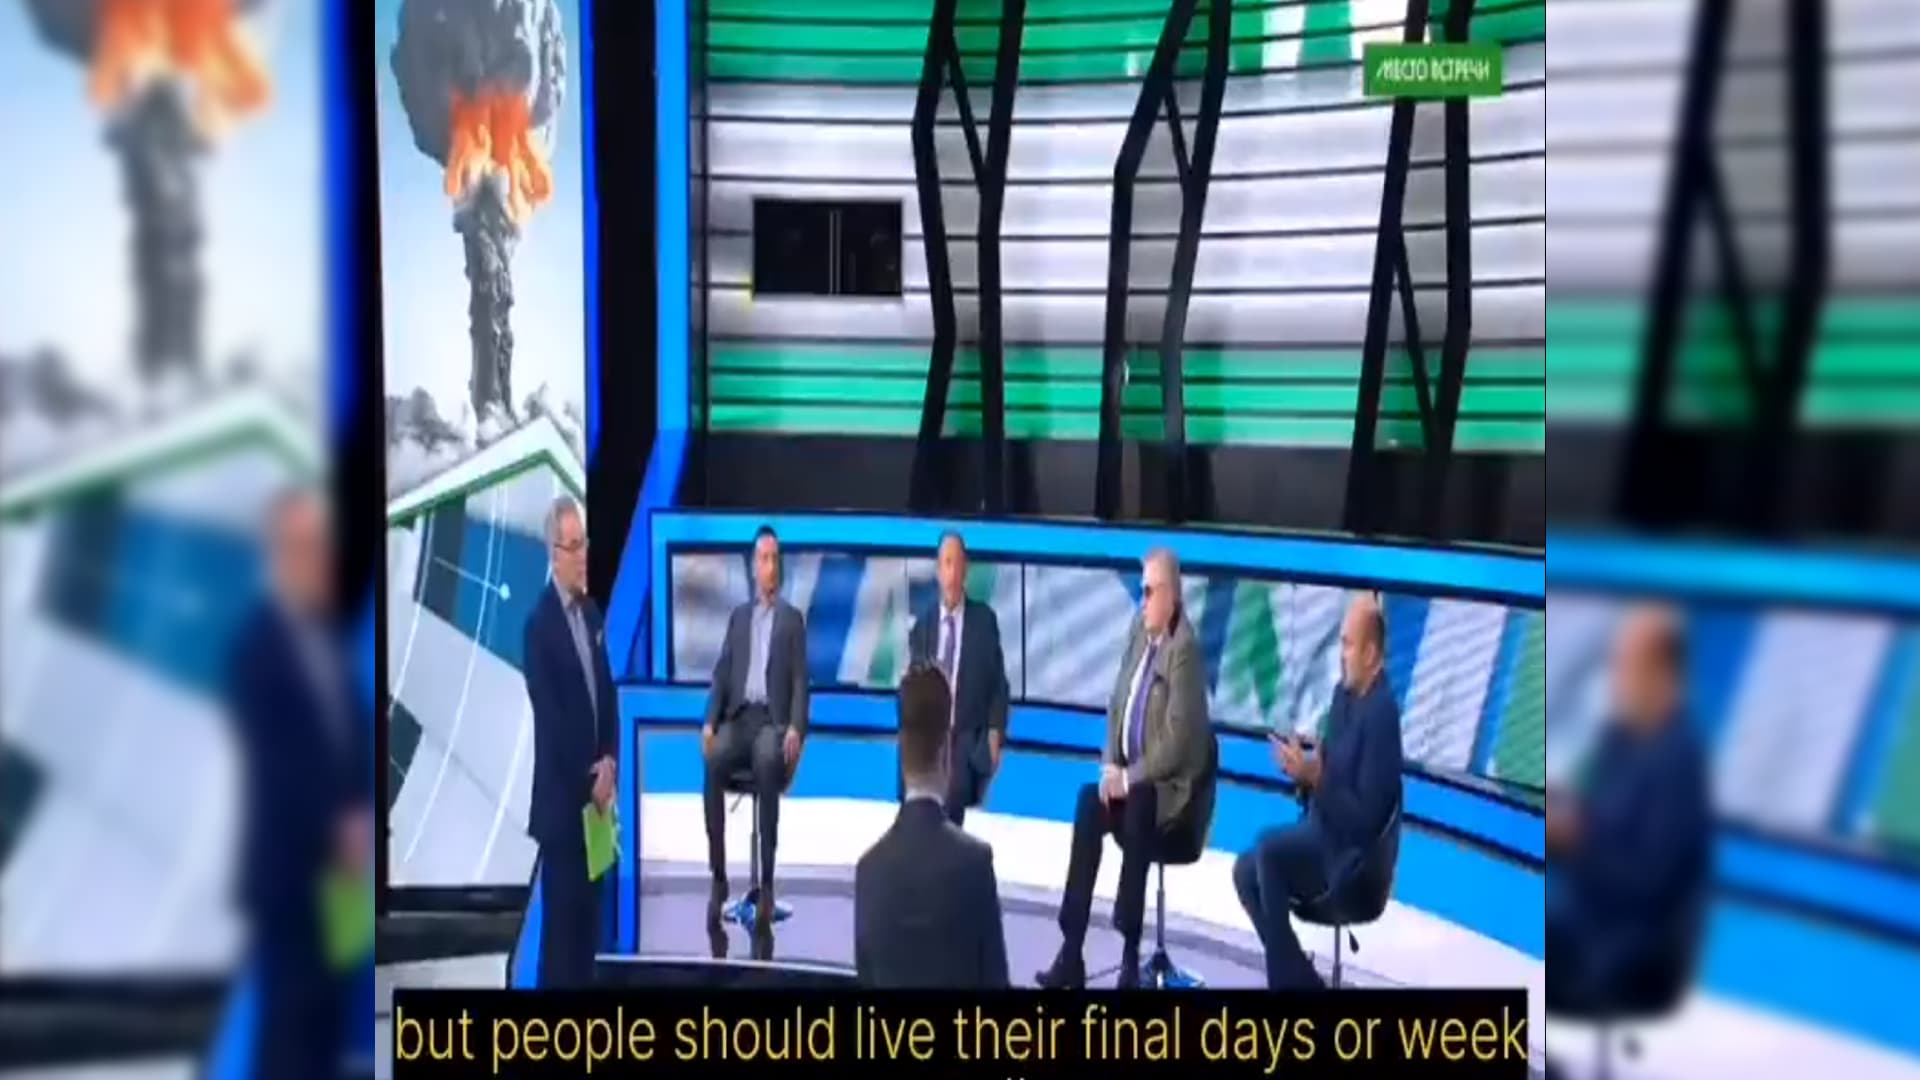 W rosyjskiej telewizji ludzkość jest zaproszona, aby cieszyć się ostatnimi dniami przed nuklearną apokalipsą